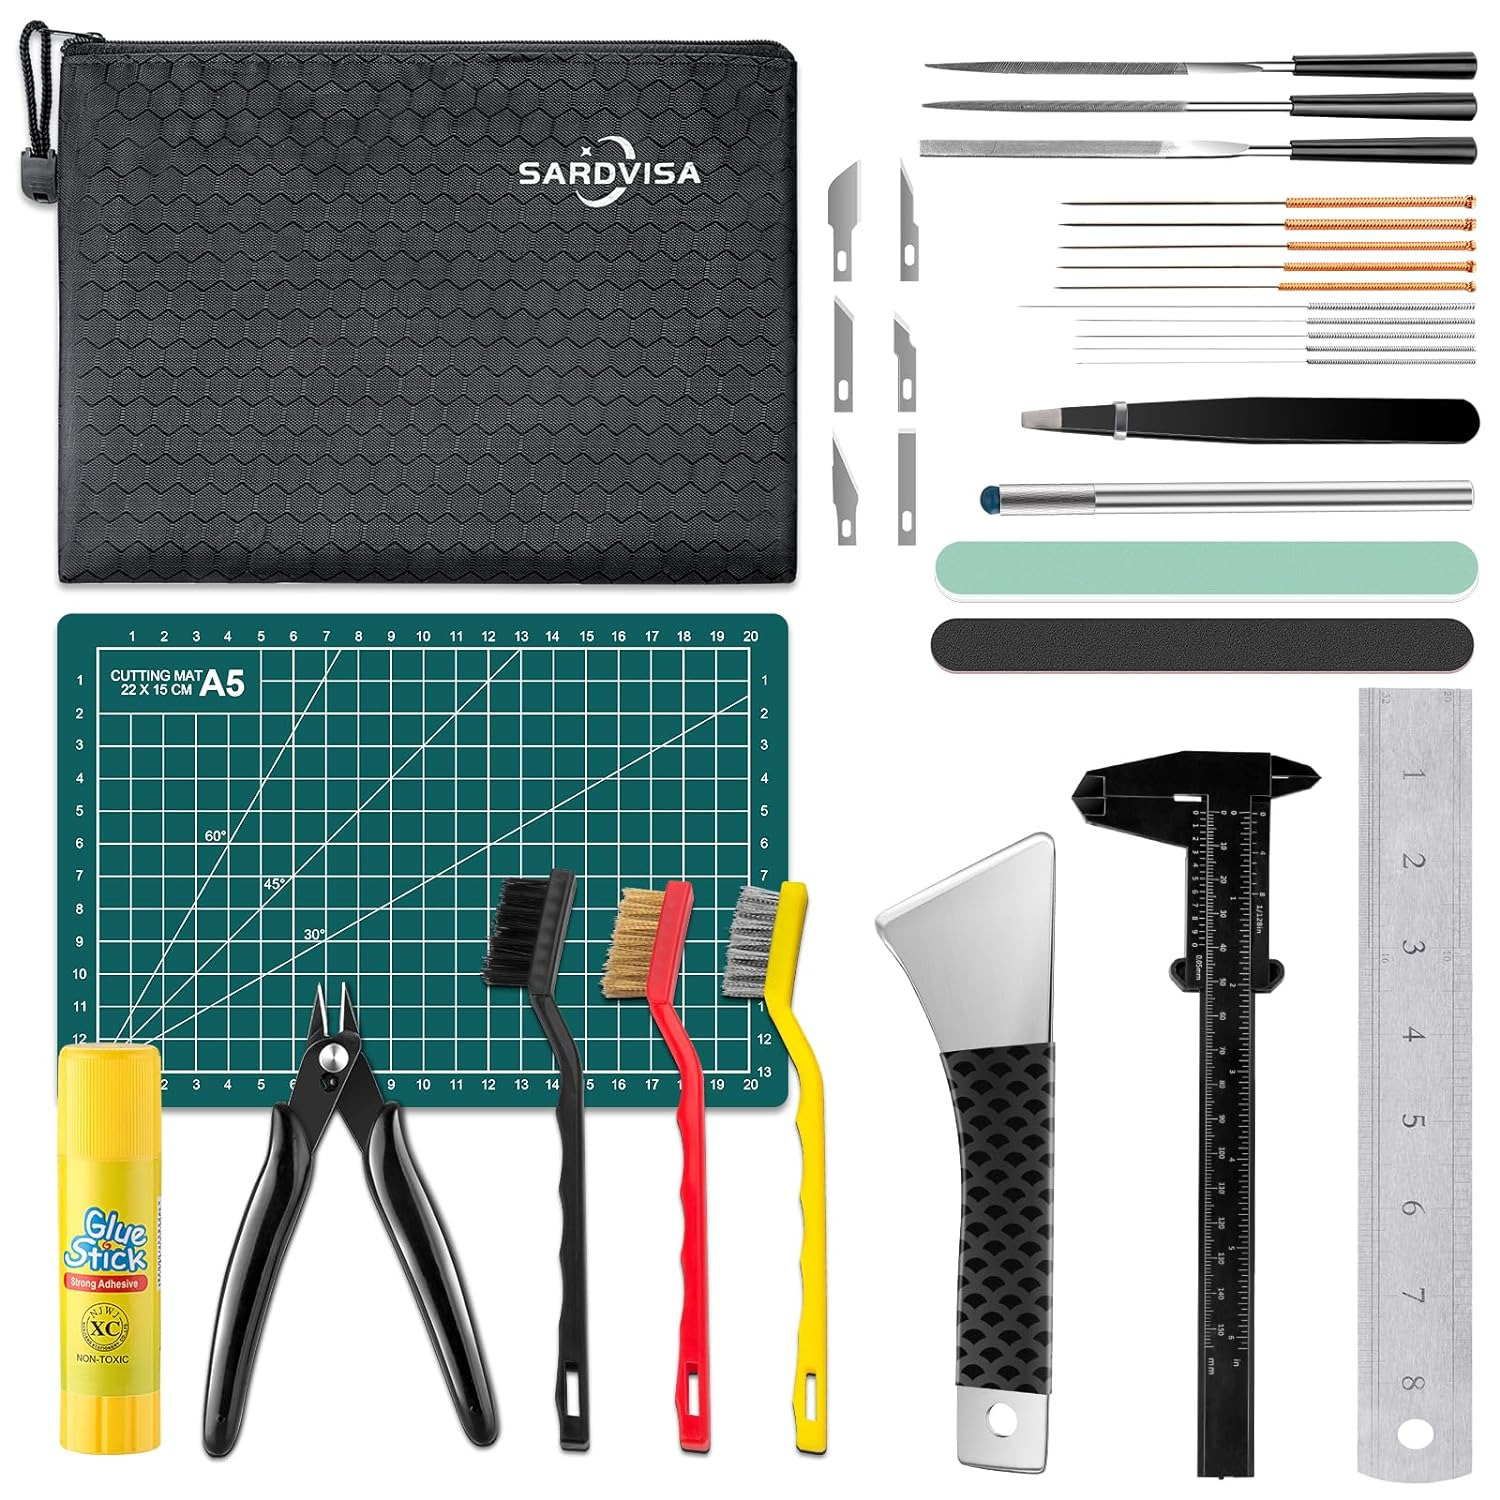 3D Printer Tools Kit with Zipper Bag, Includes Nozzle Cleaning Set, Scraper